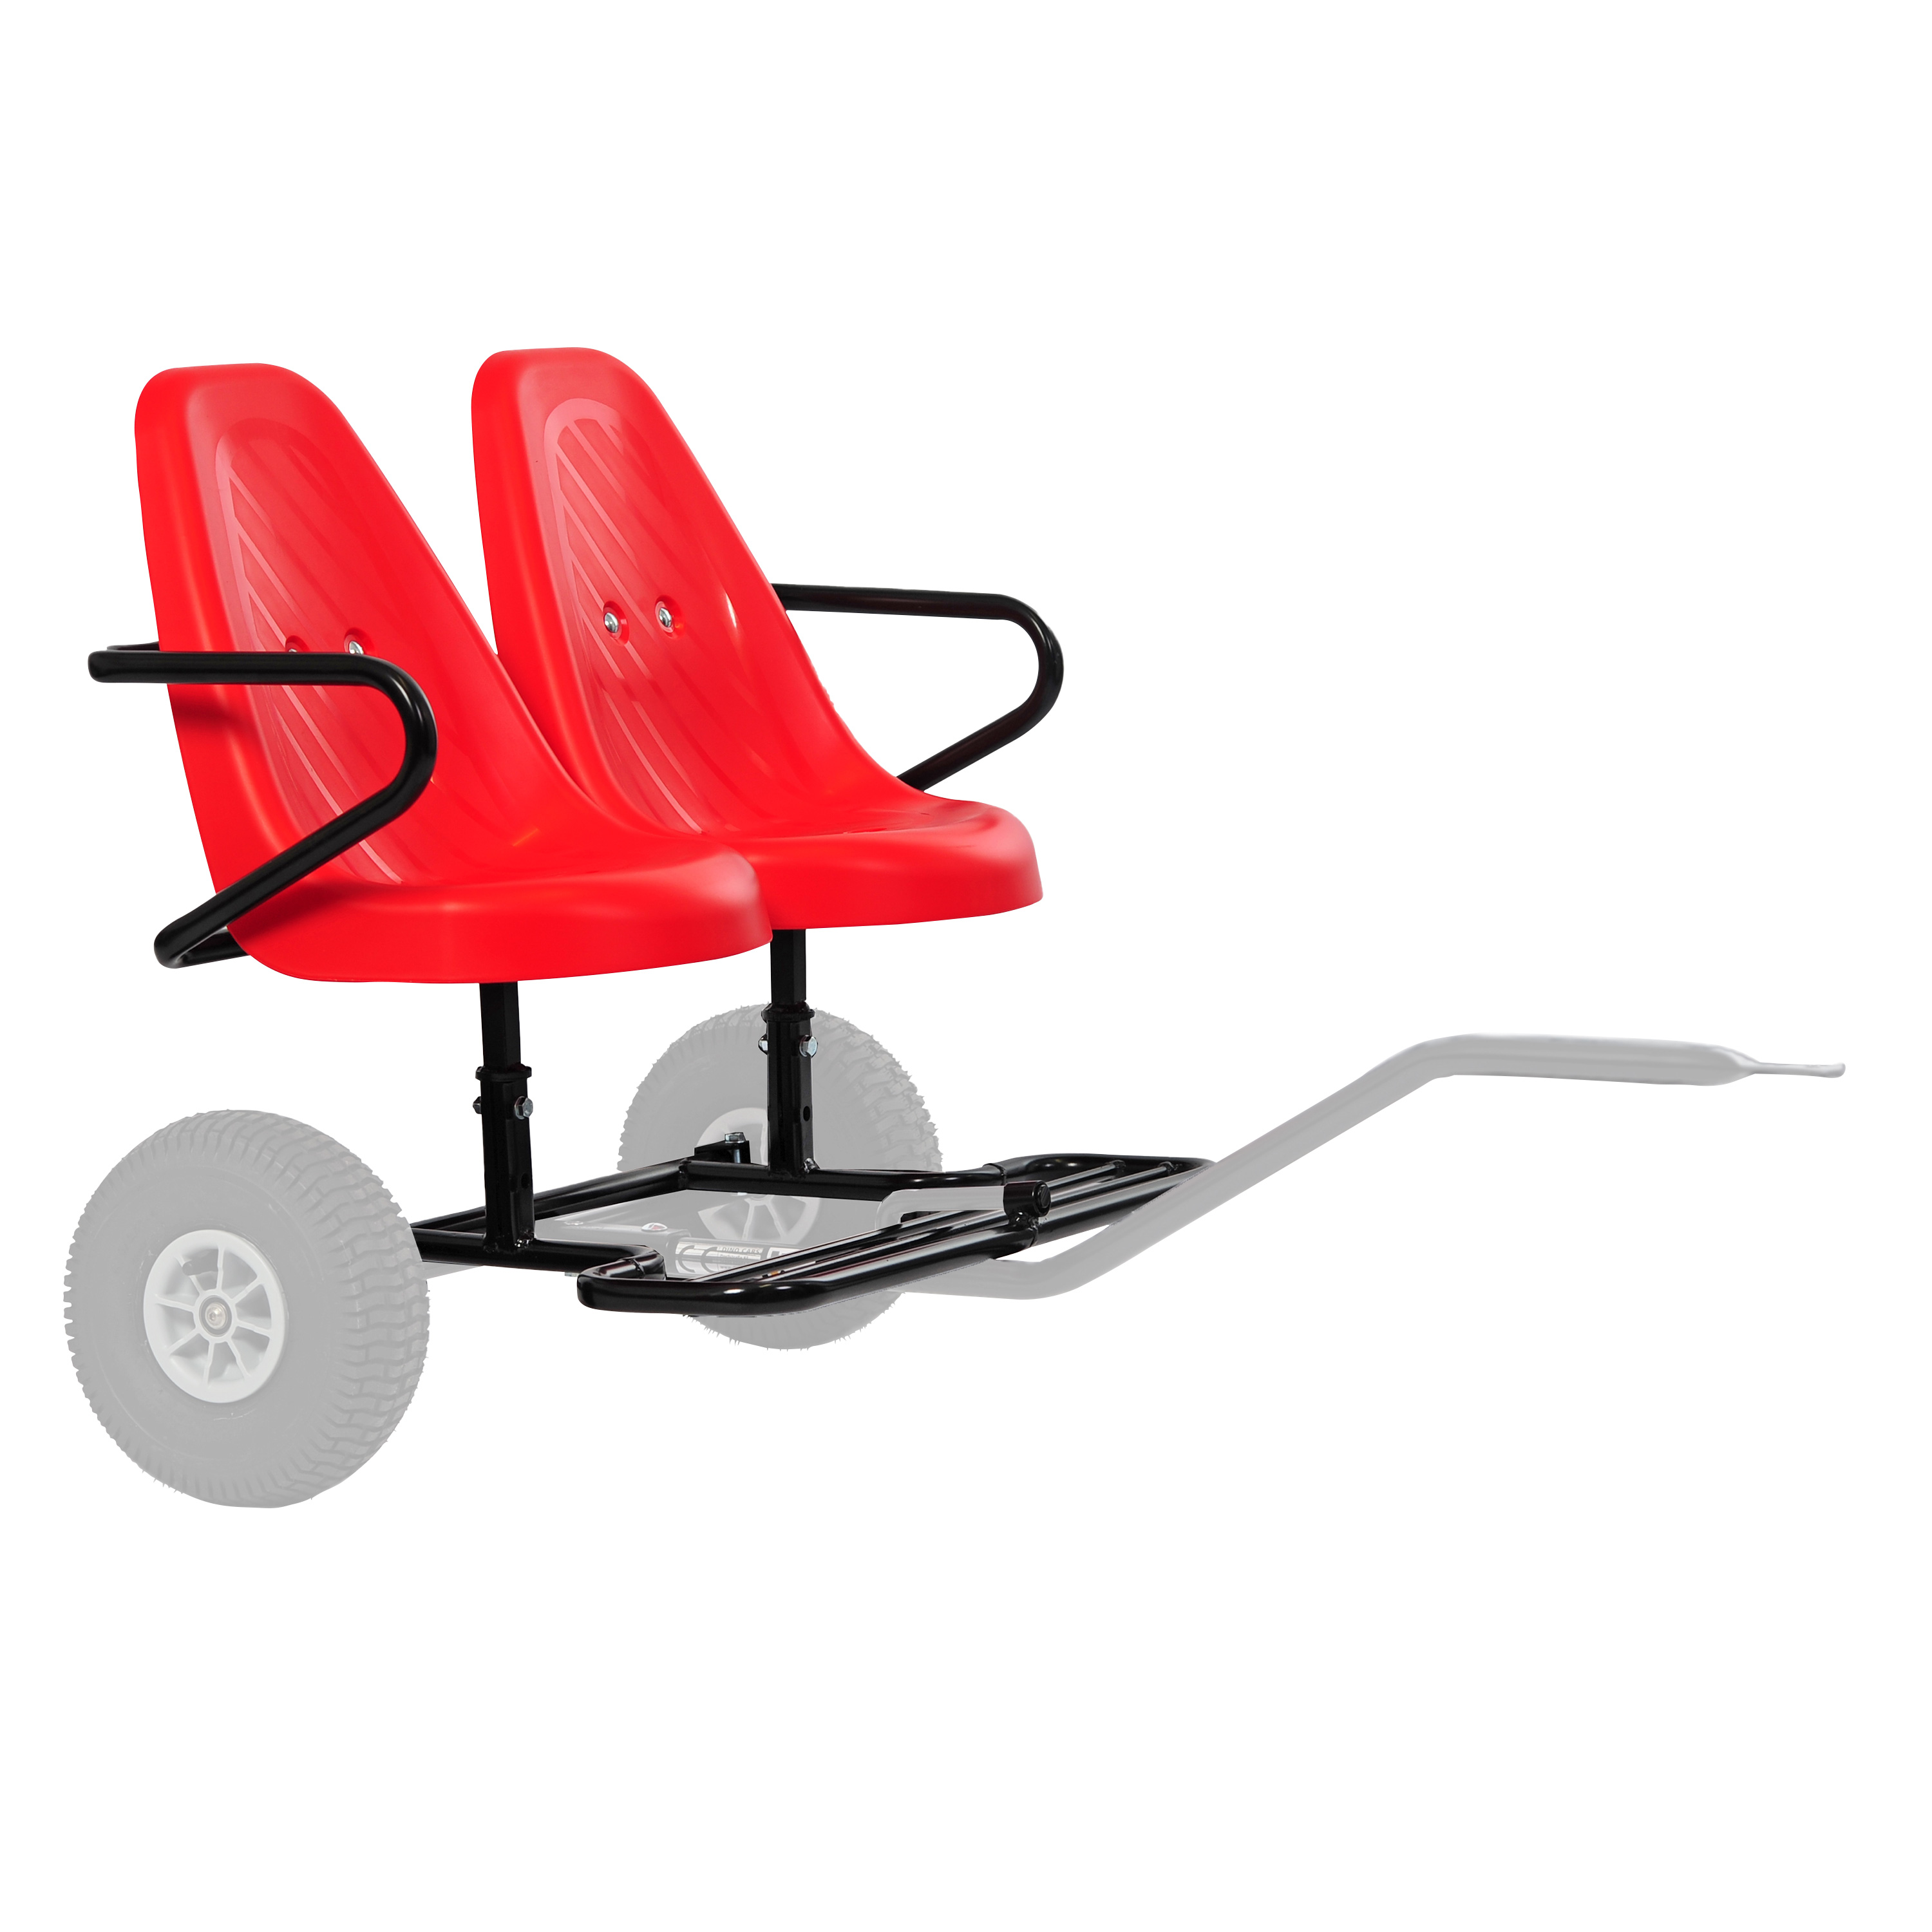 DinoCars 'Zweisitzer' rot, Anhängeraufsatz für Sporty BF1